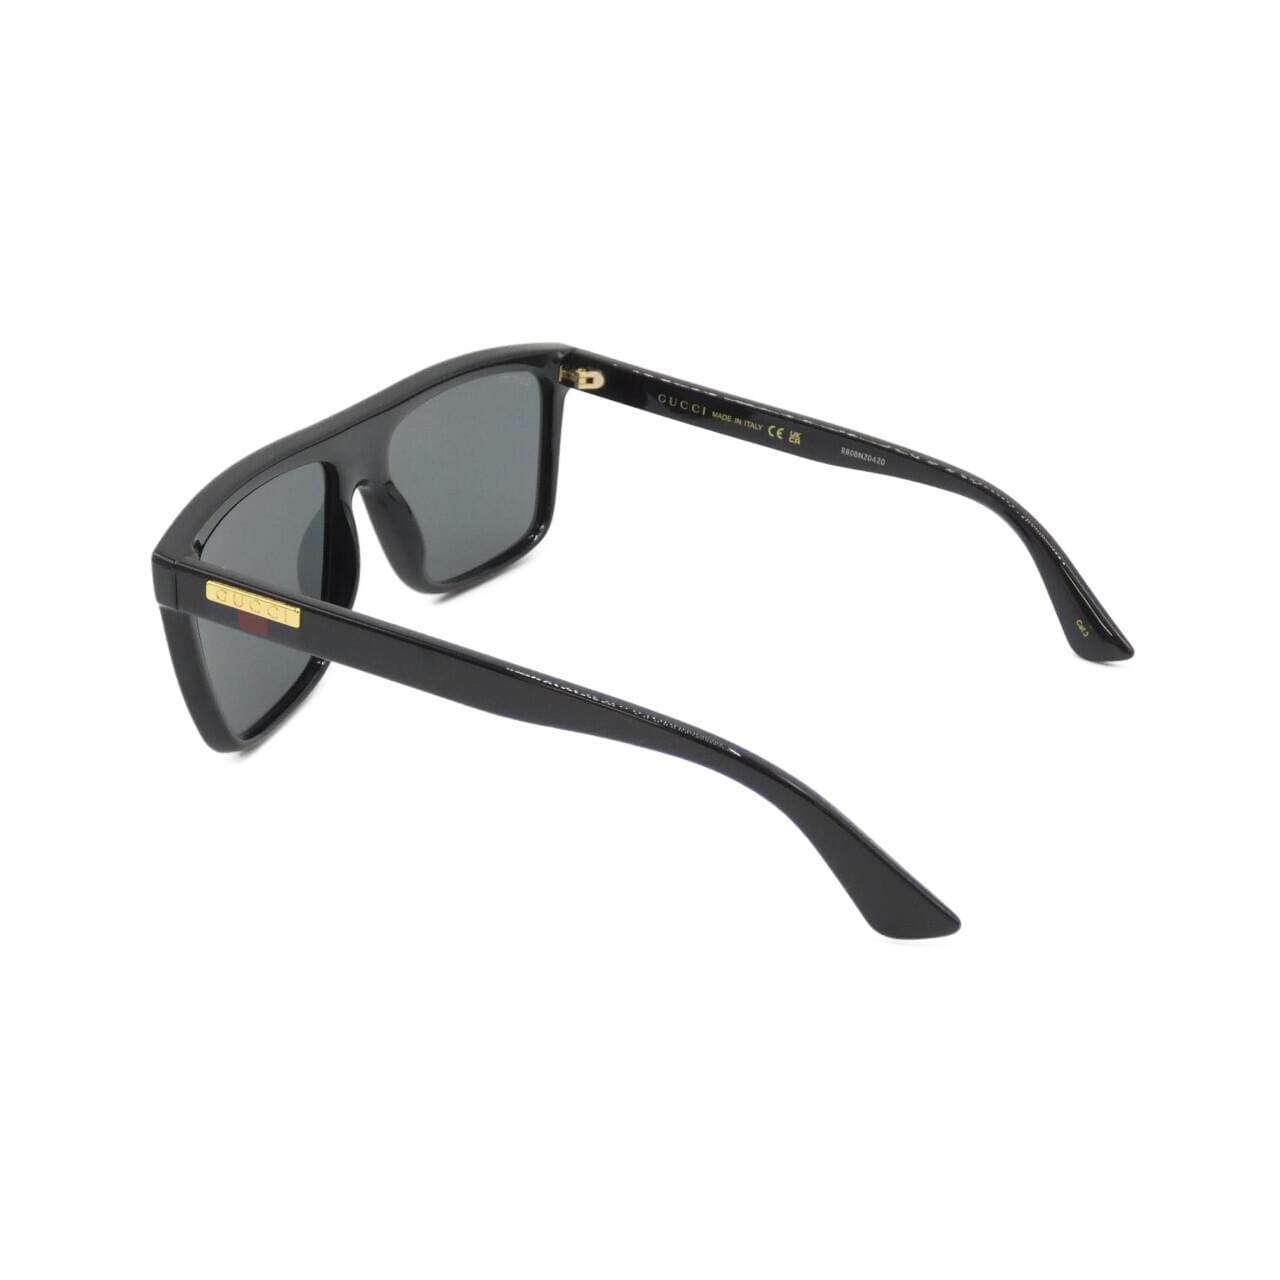 [BRAND NEW] Gucci 0748S Sunglasses